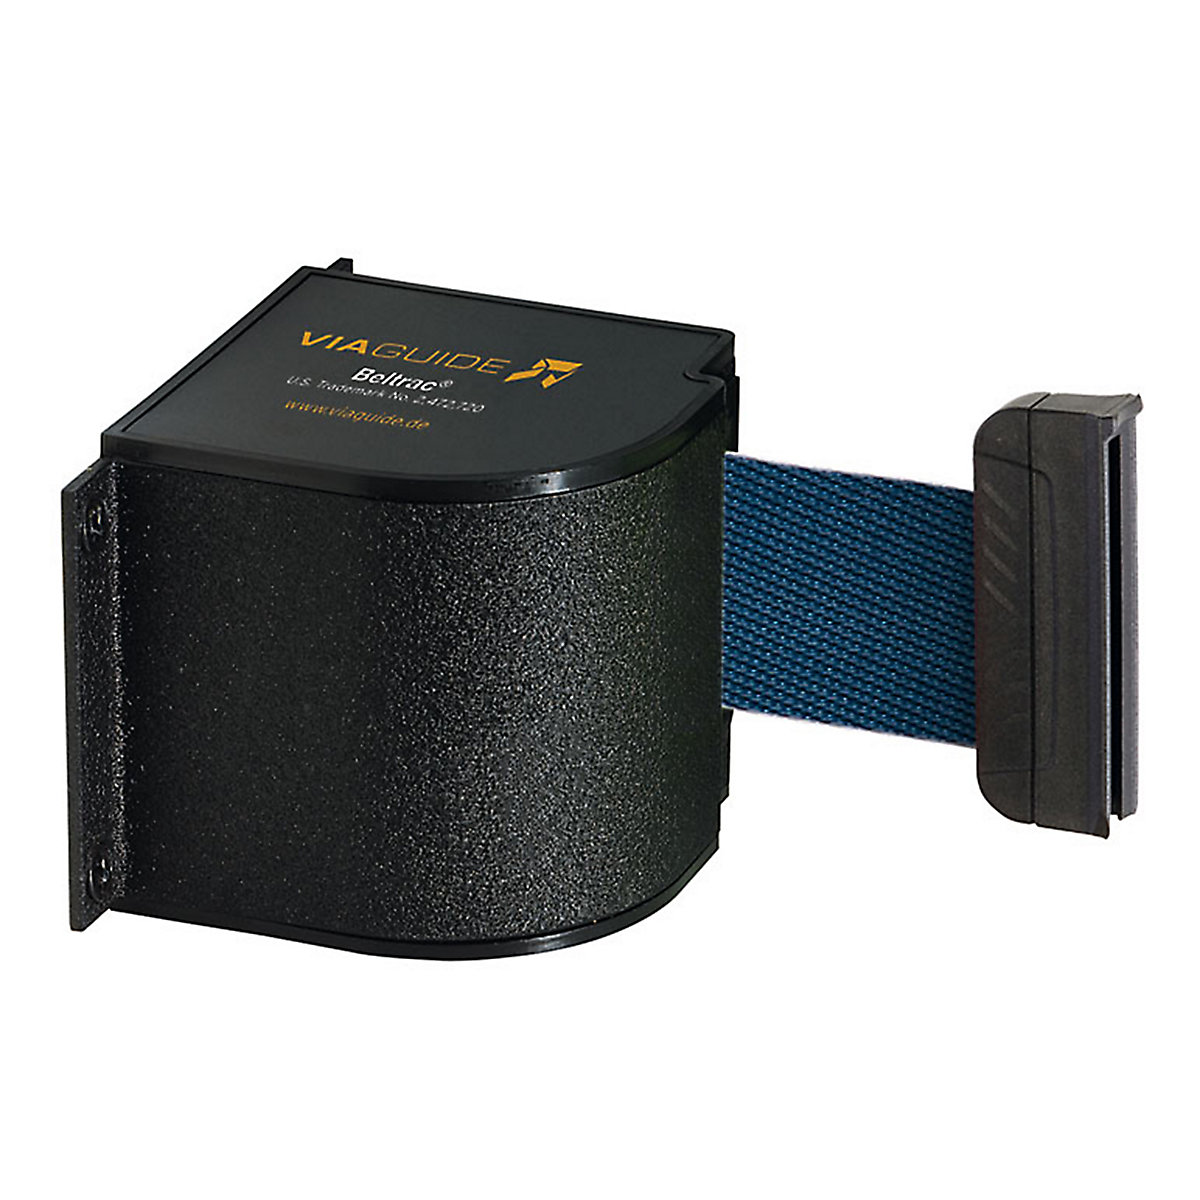 Cassete de cinta Wall Mount, extração máx. da cinta 5400 mm, cor da cinta azul marinho-3